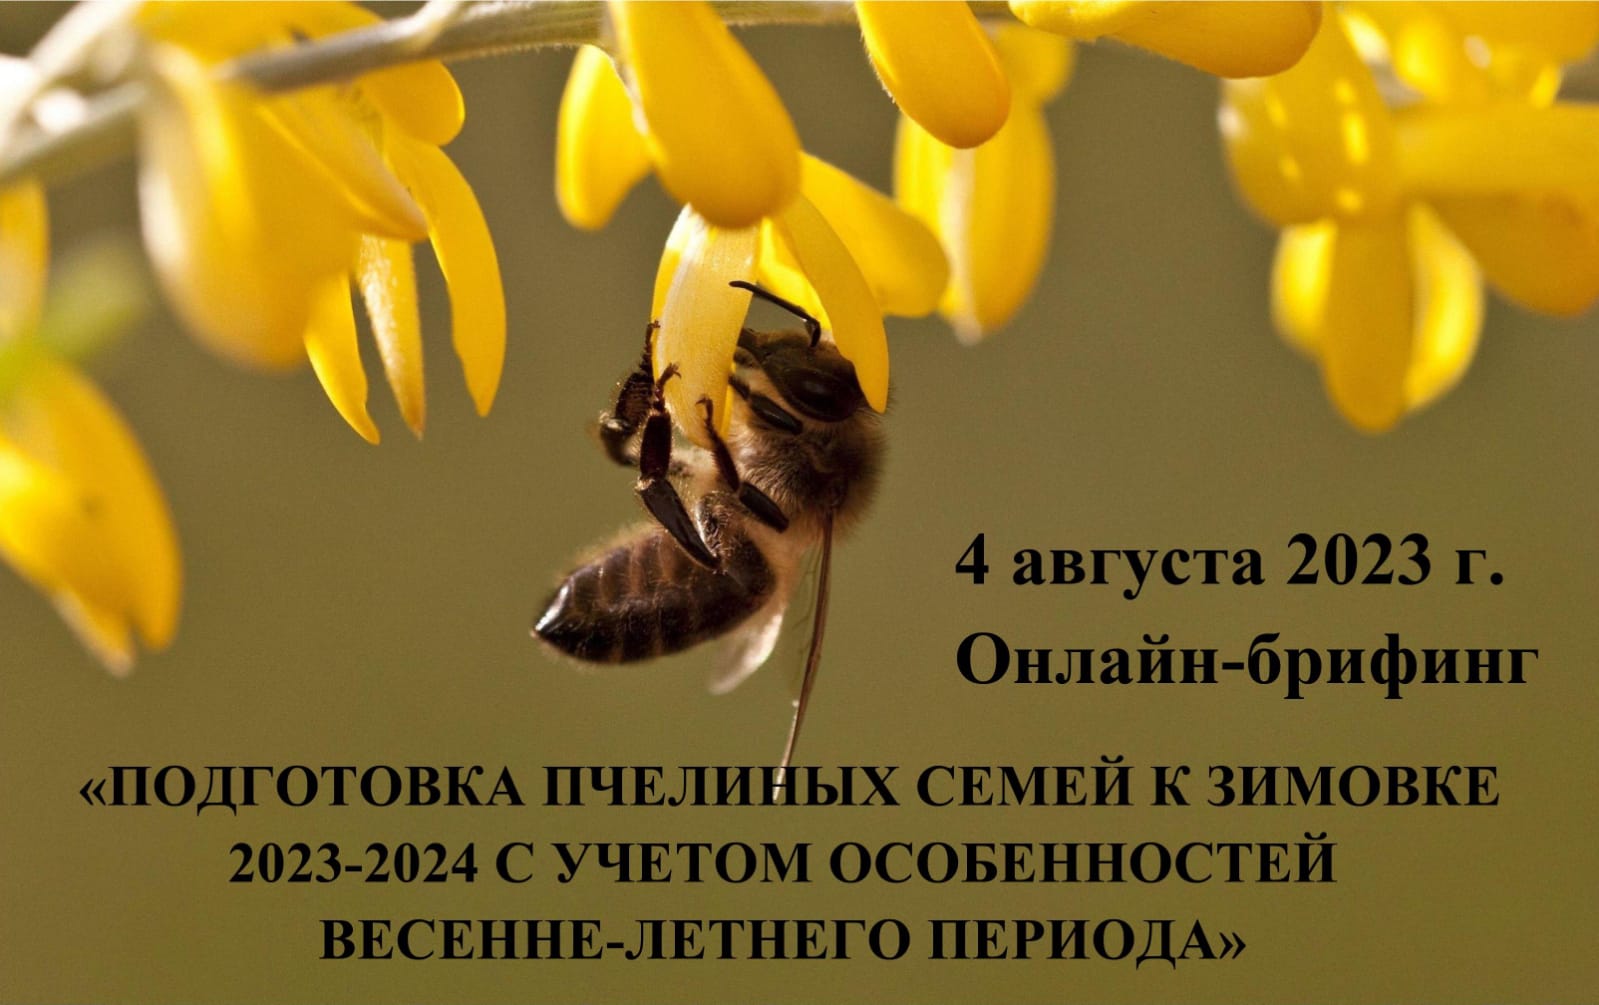 Онлайн-брифинг «Подготовка пчелиных семей к зимовке 2023- 2024 гг. с учетом особенностей весенне-летнего периода»